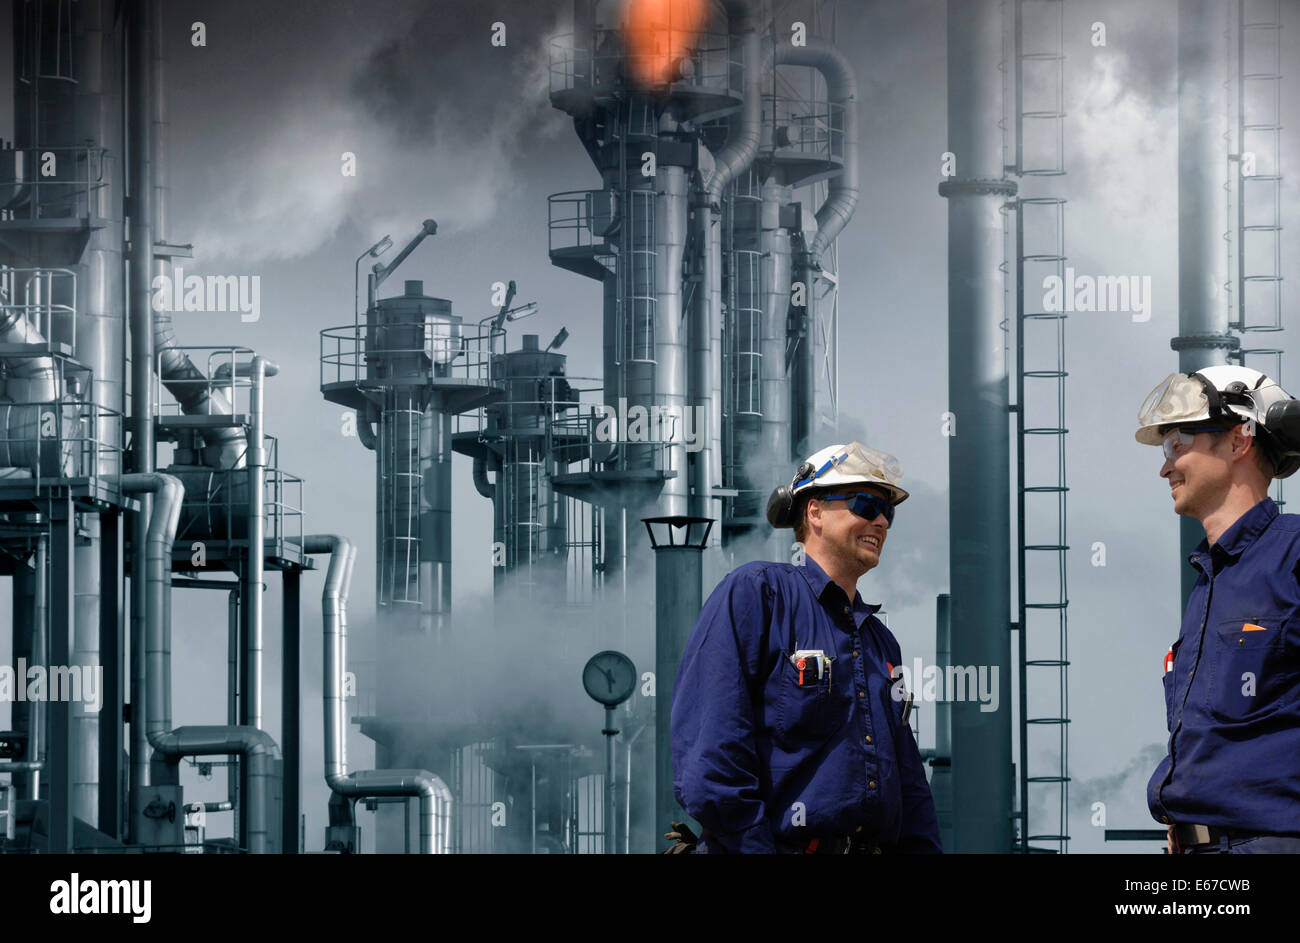 Y los trabajadores de la refinería de petróleo, giant llamas e incendios Foto de stock